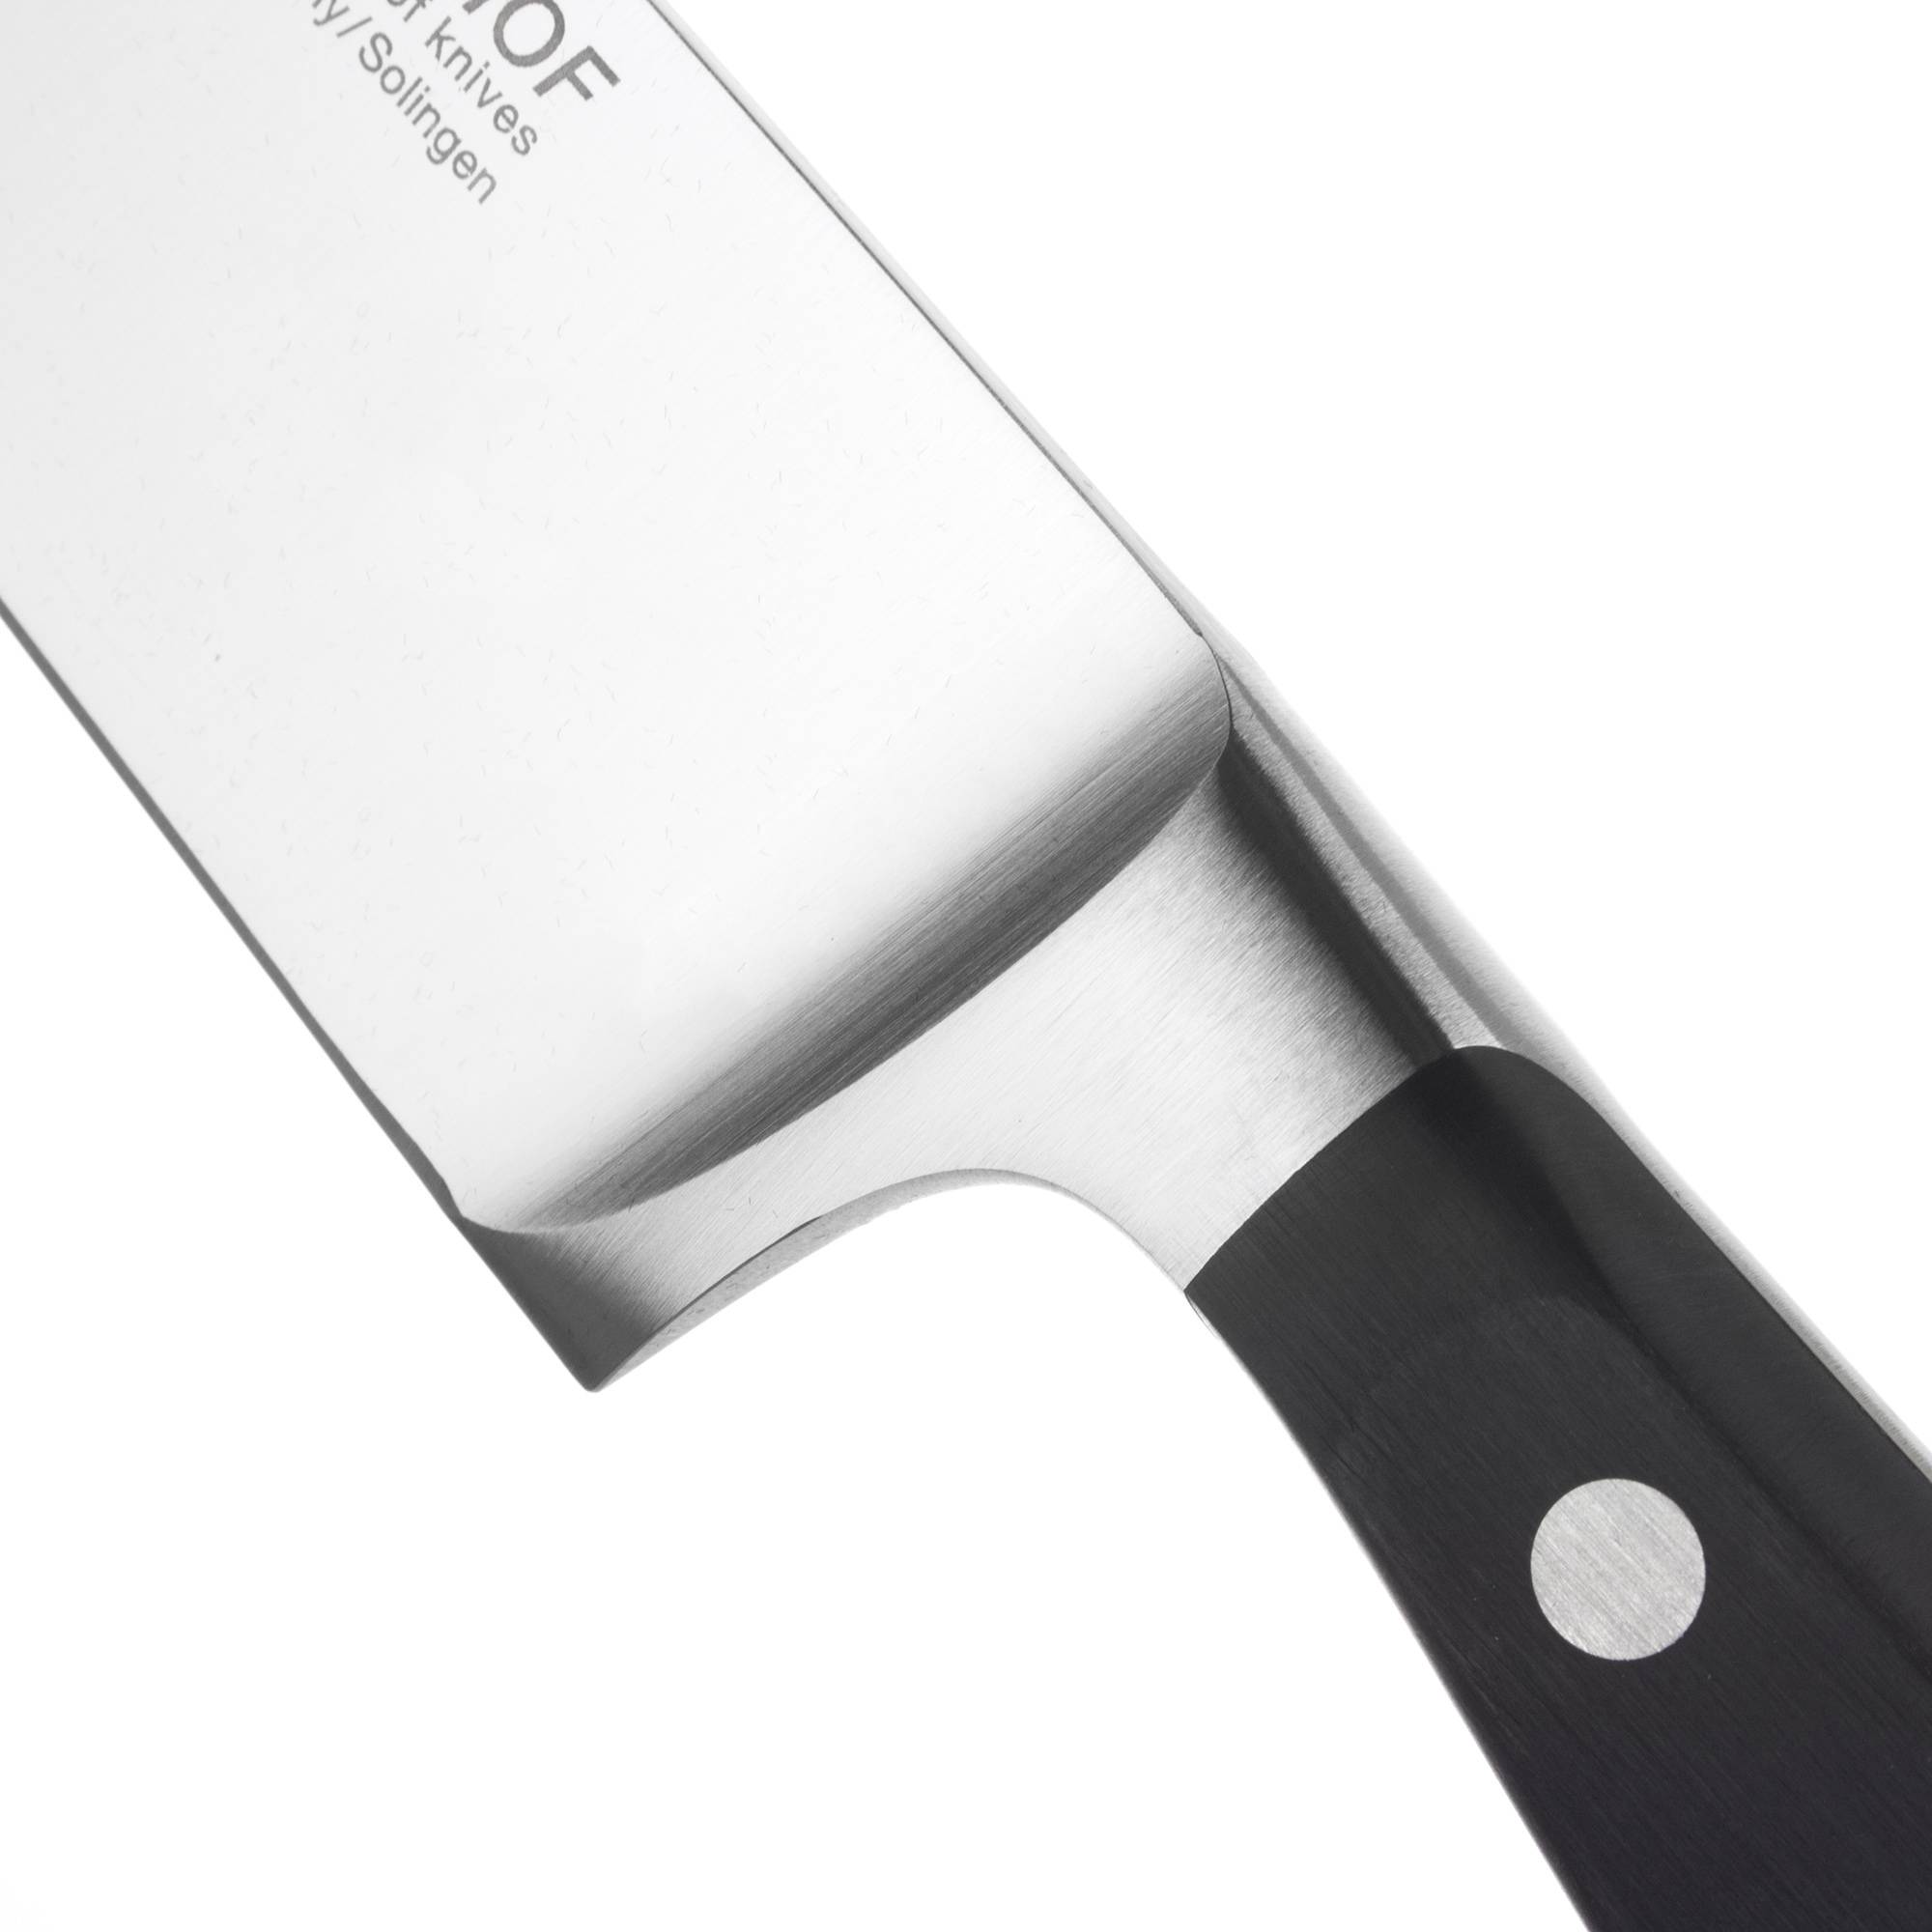 Профессиональный поварской кухонный нож 18 см, серия Classic, WUESTHOF,  Золинген, Германия